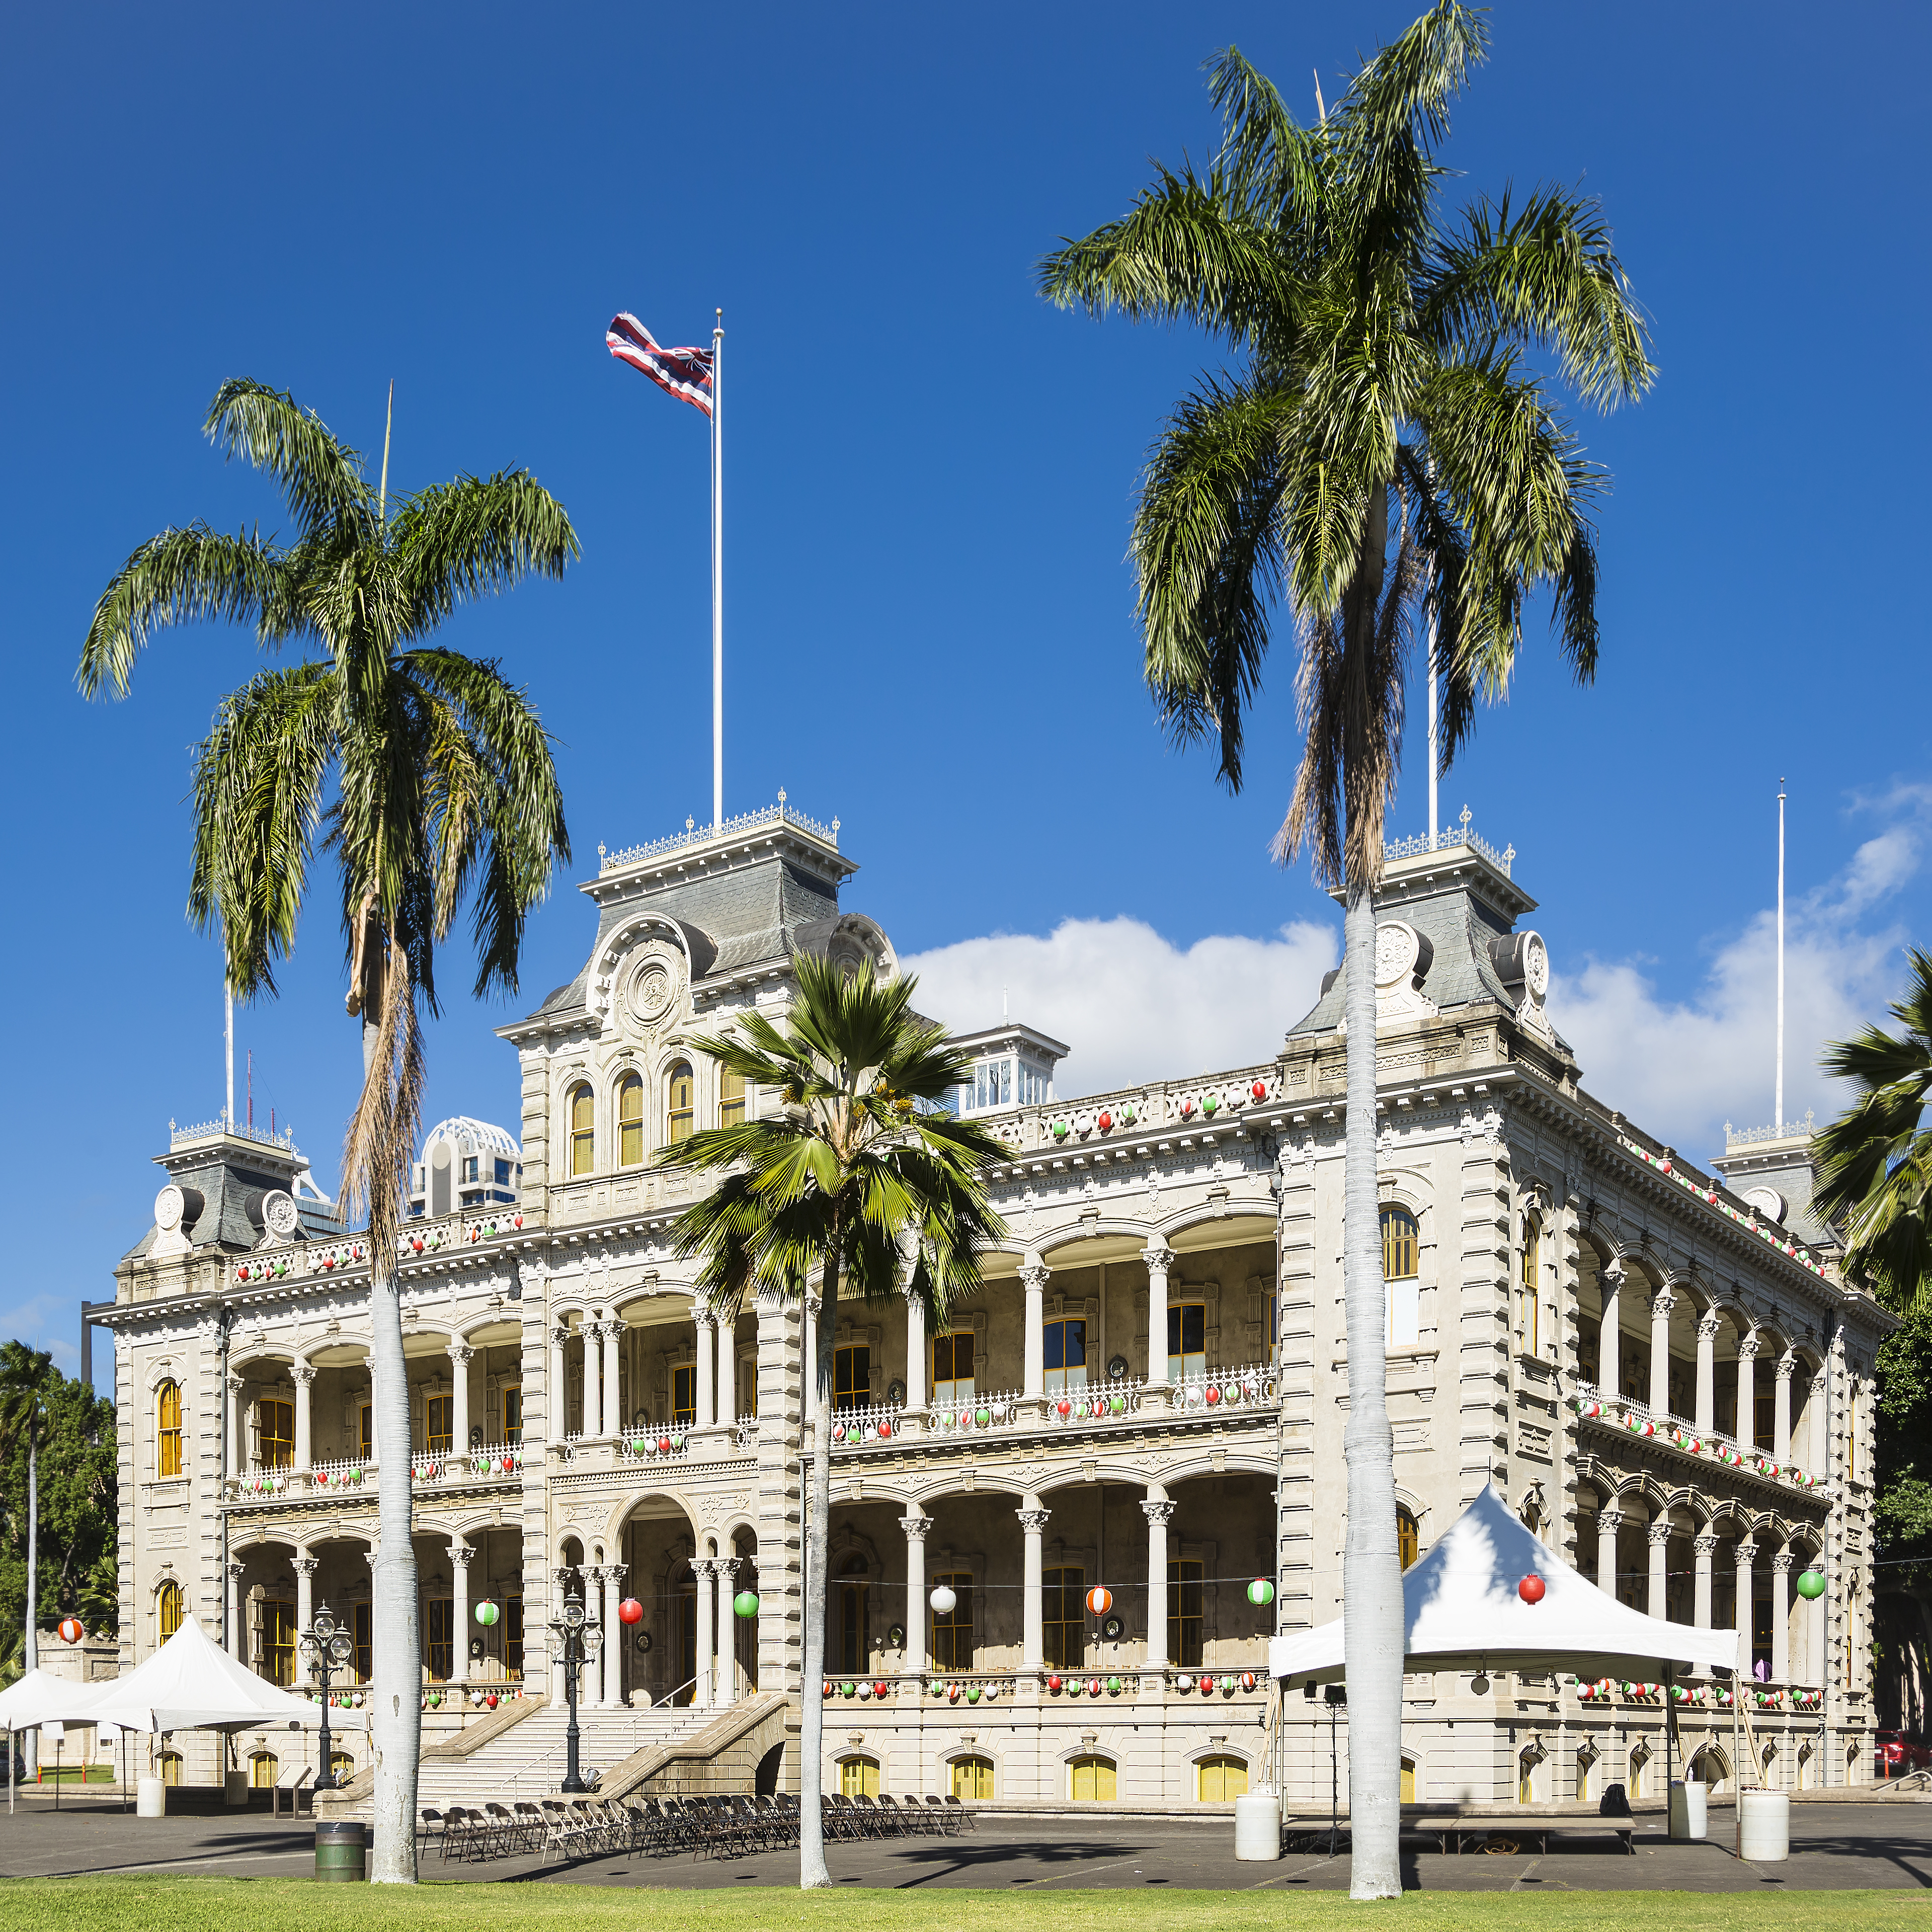 Oahu vs Maui - Iolani Palace